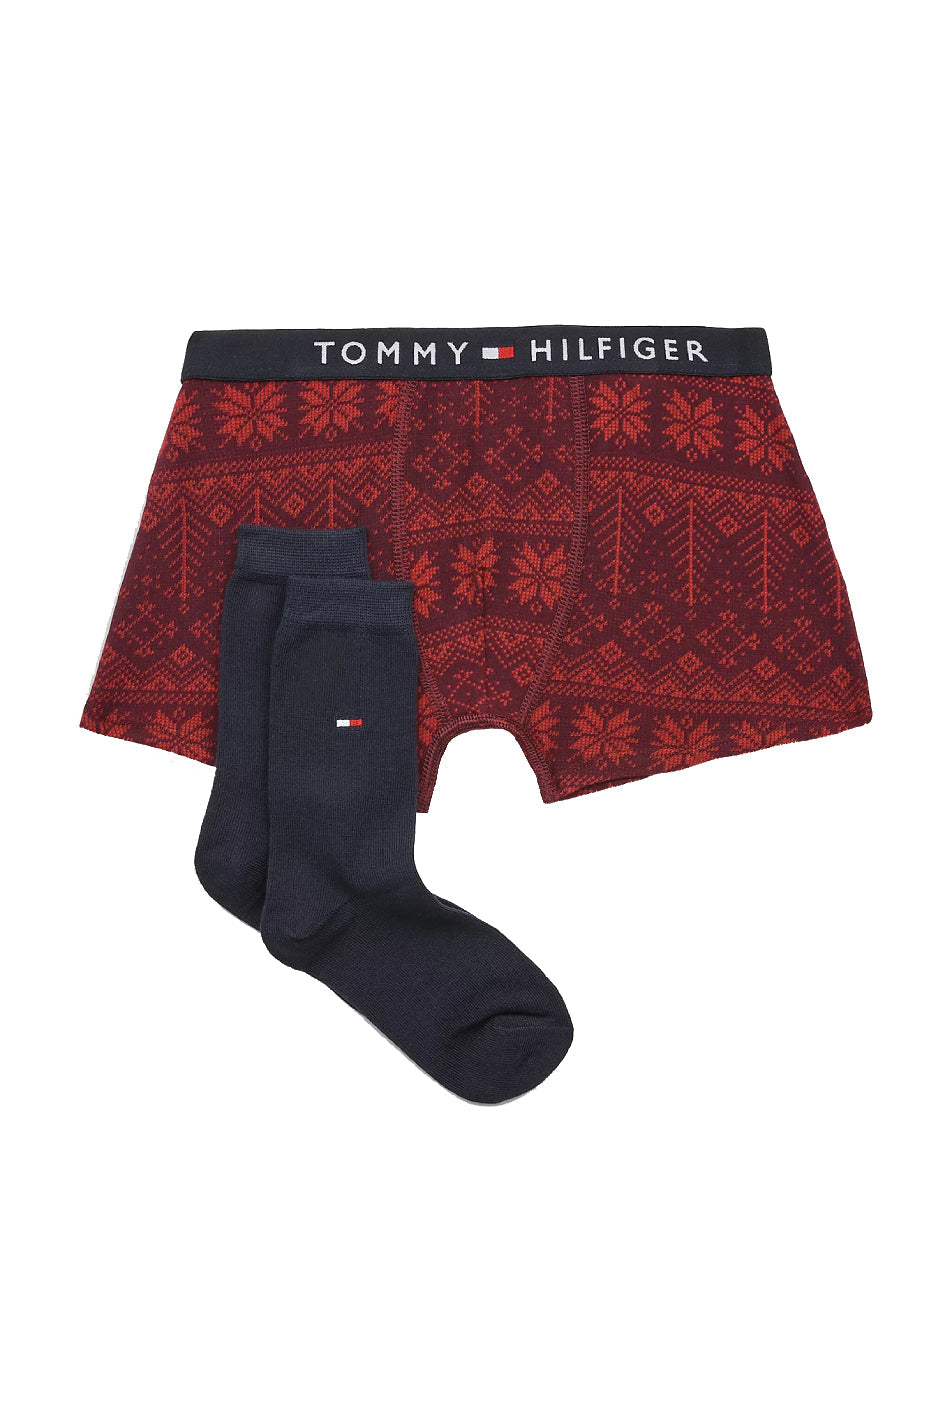 Tommy Hilfiger Men's Trunk & Sock Set